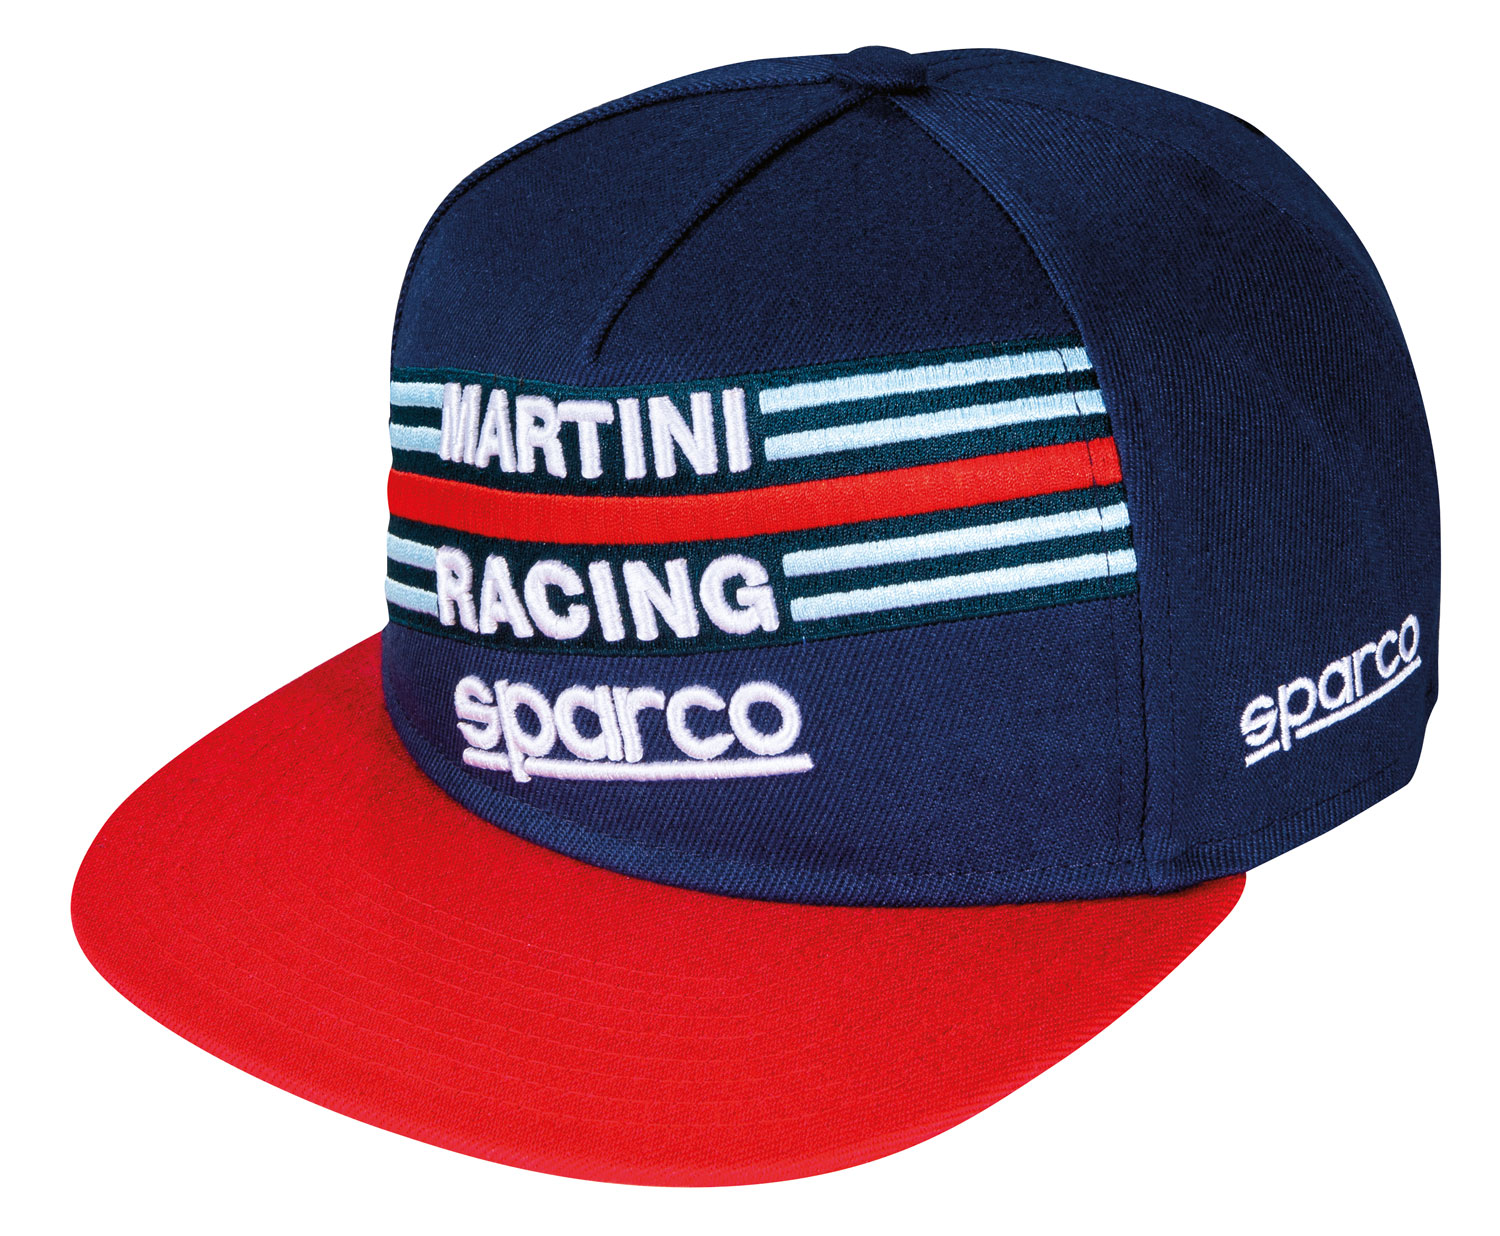 Sparco Kappe Martini Racing